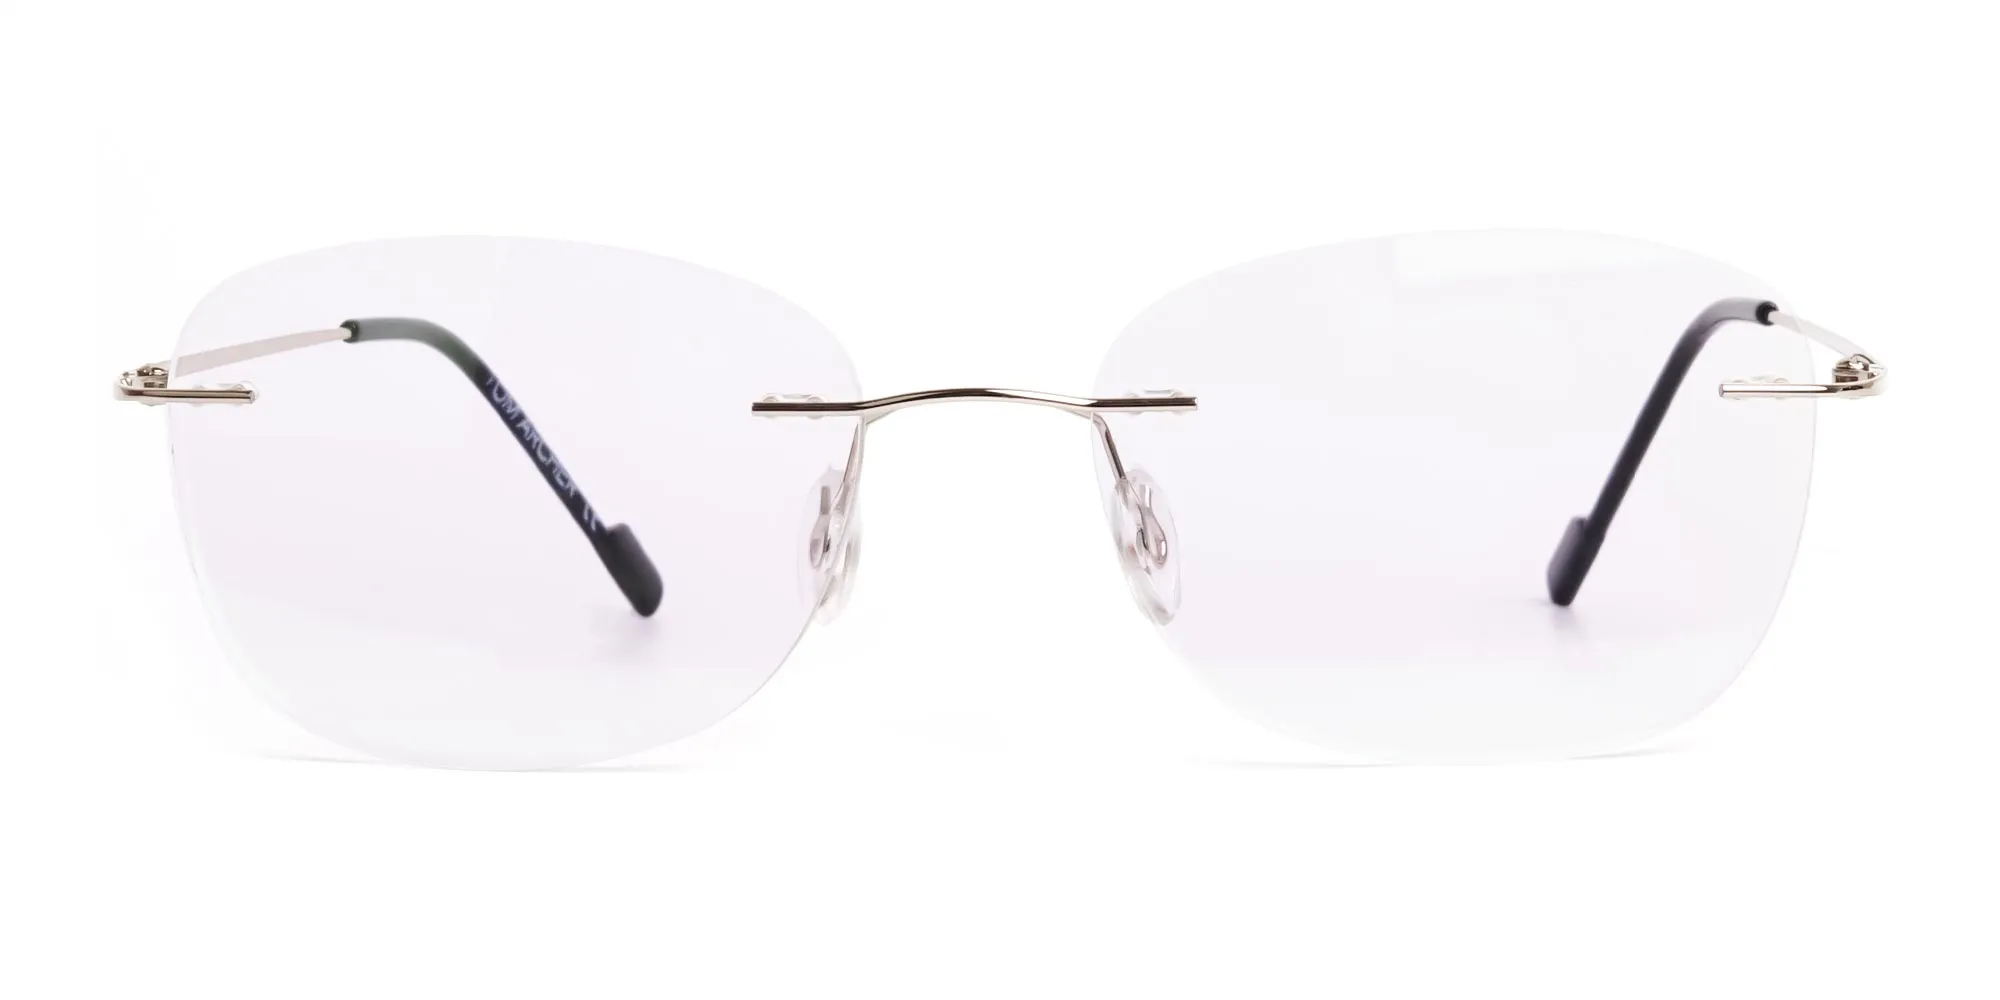 silver squarer rimless glasses frames-2